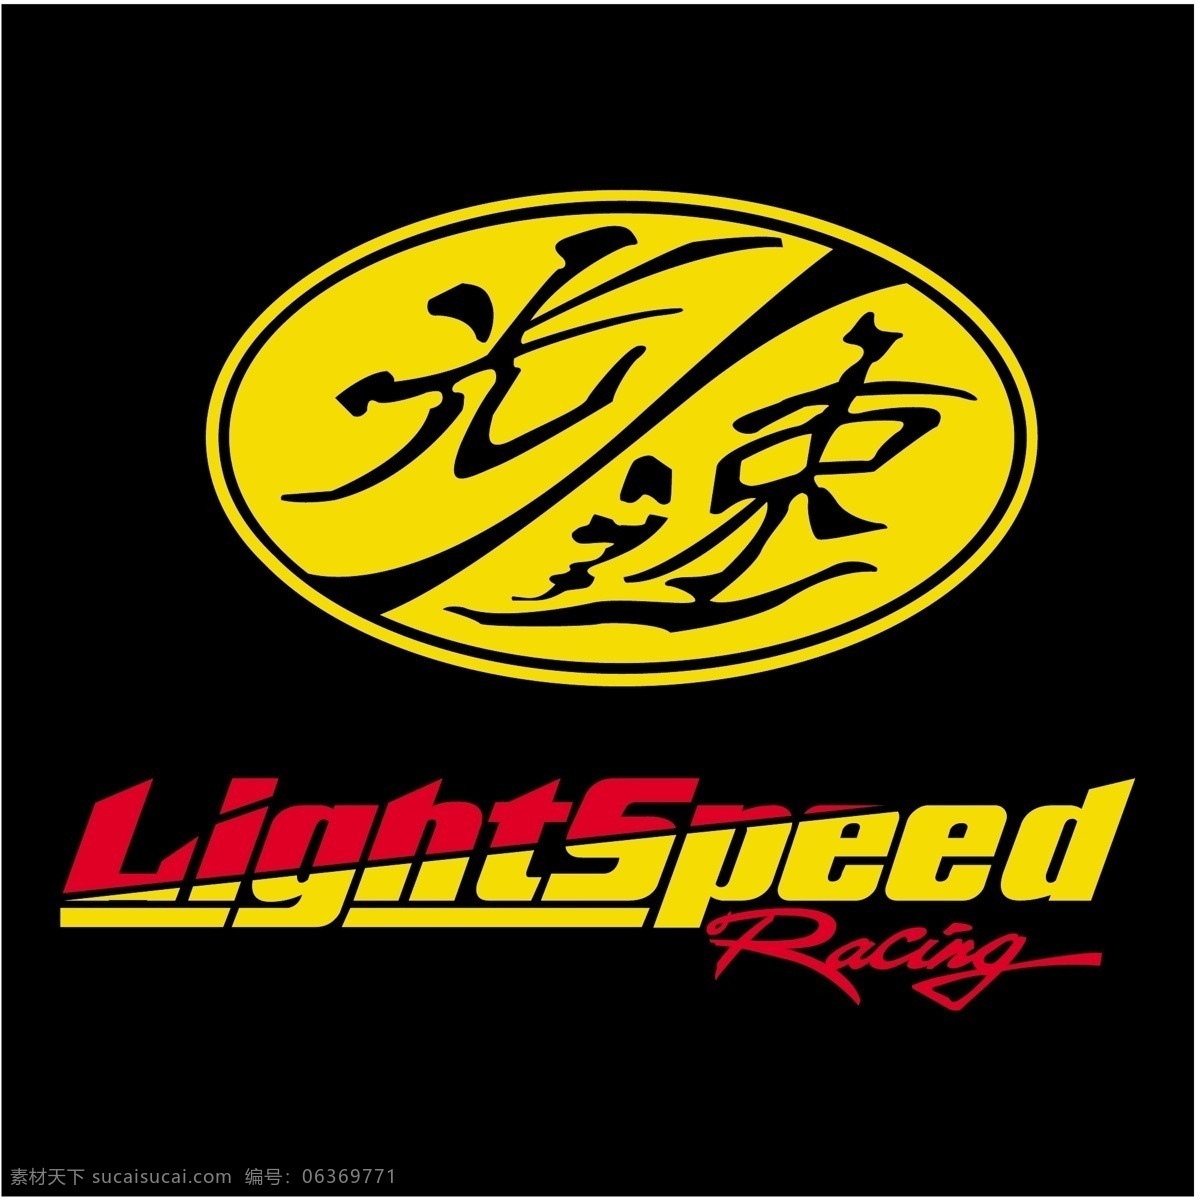 光 速度 赛马 自由 之光 标志 光速 赛车 标识 psd源文件 logo设计